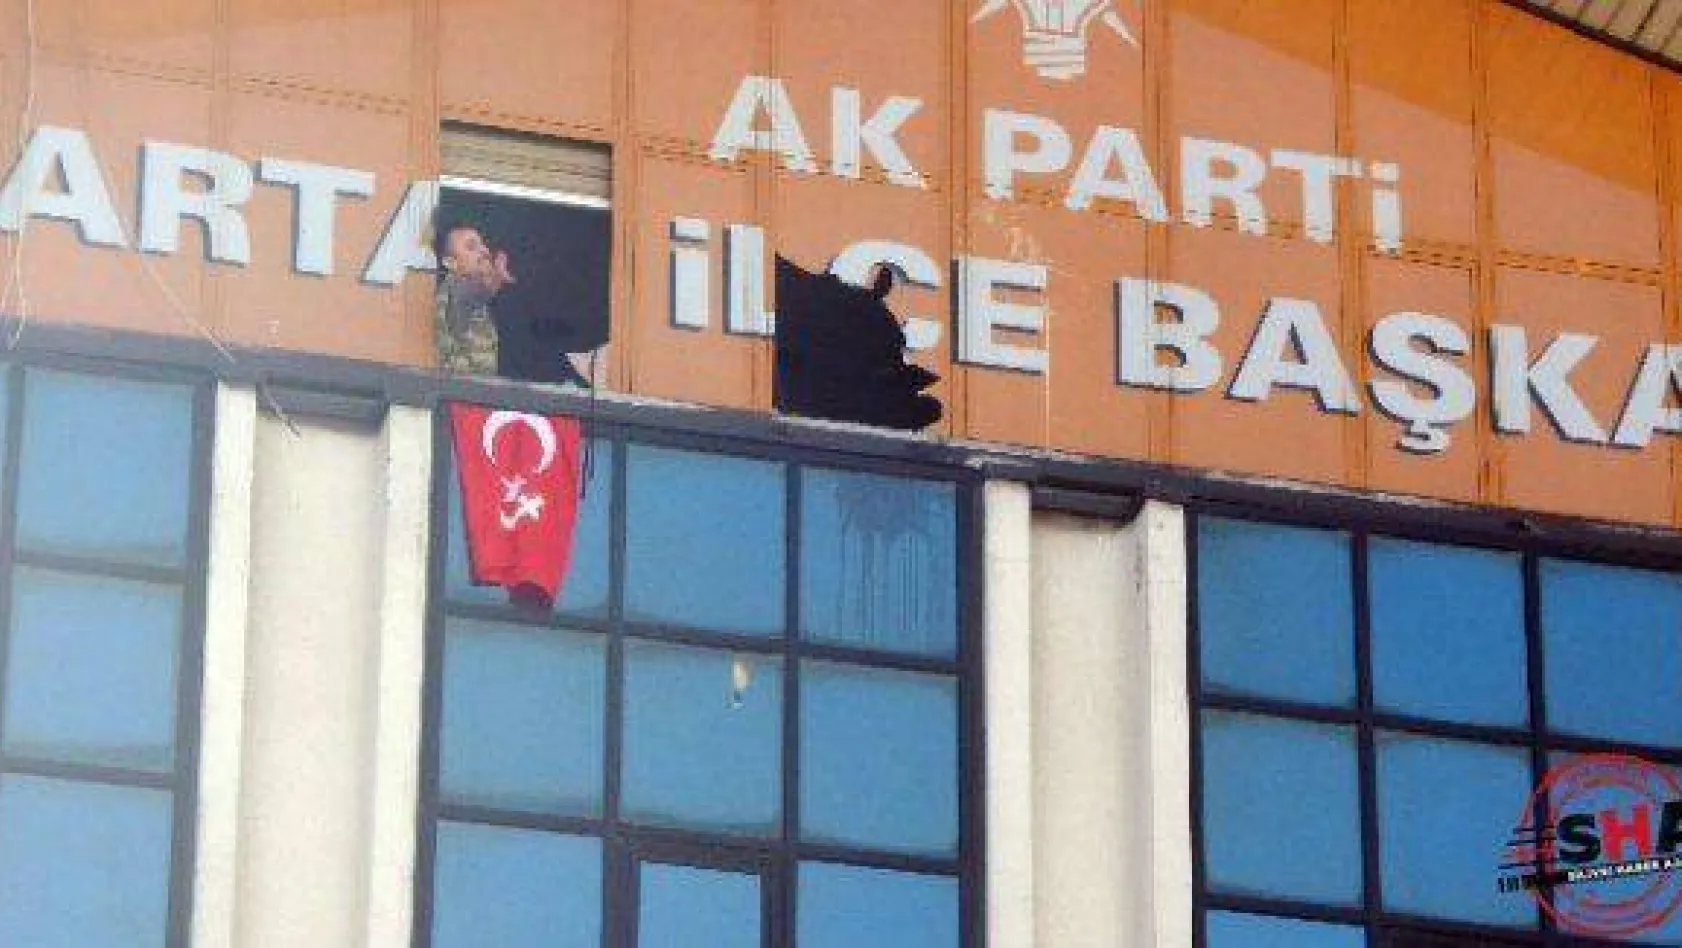 AK Parti binasına silahlı baskın!